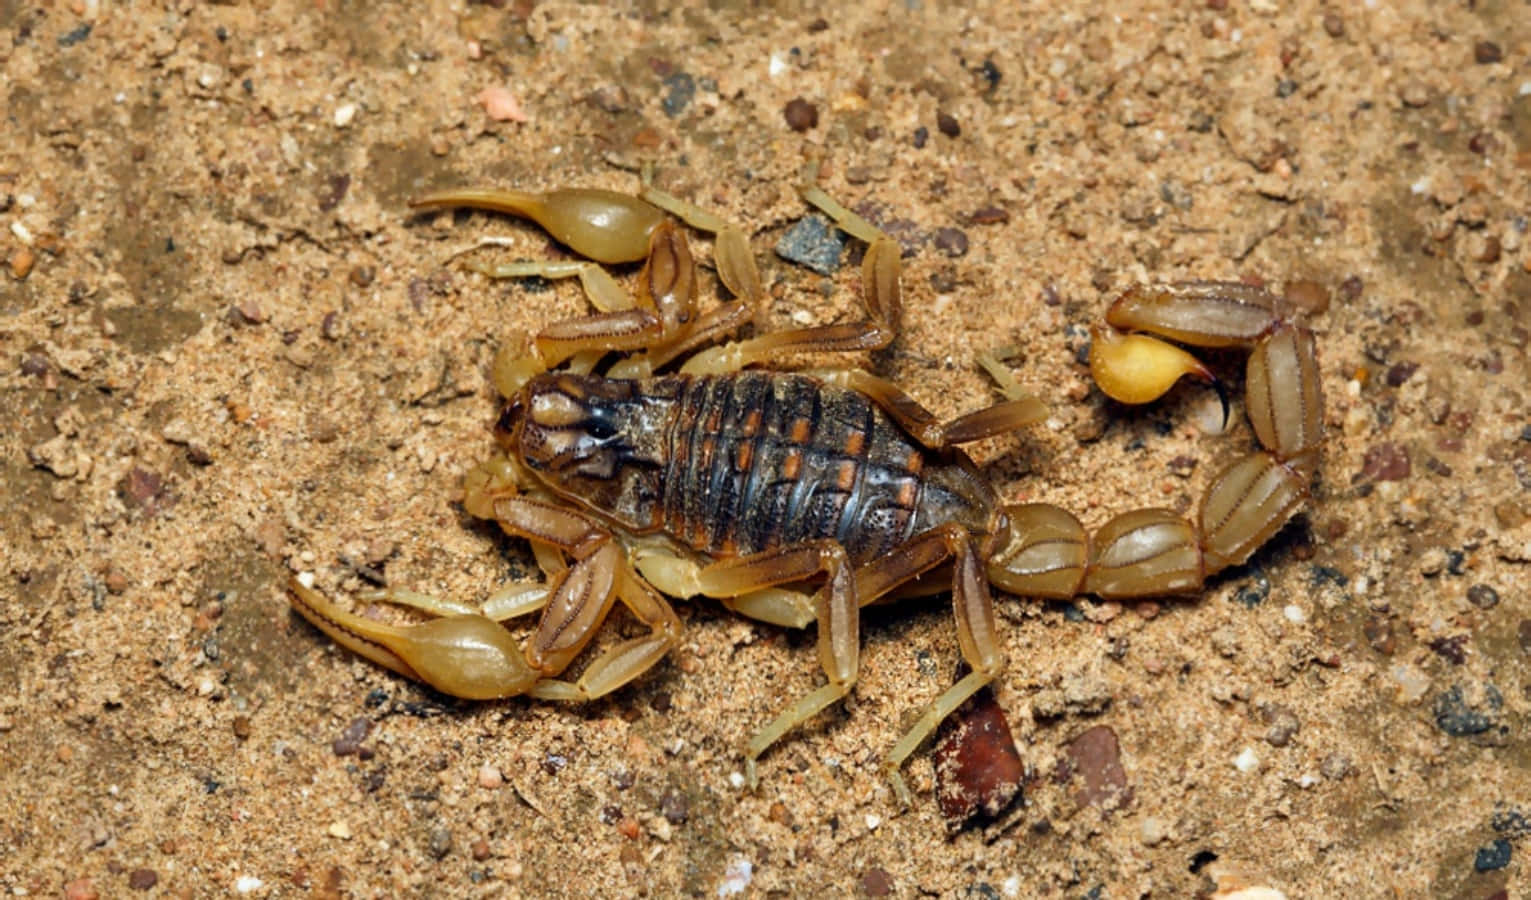 Eineleuchtend Gelbe Skorpions, Die Sich Perfekt In Den Warmen Wüstensand Einfügt.